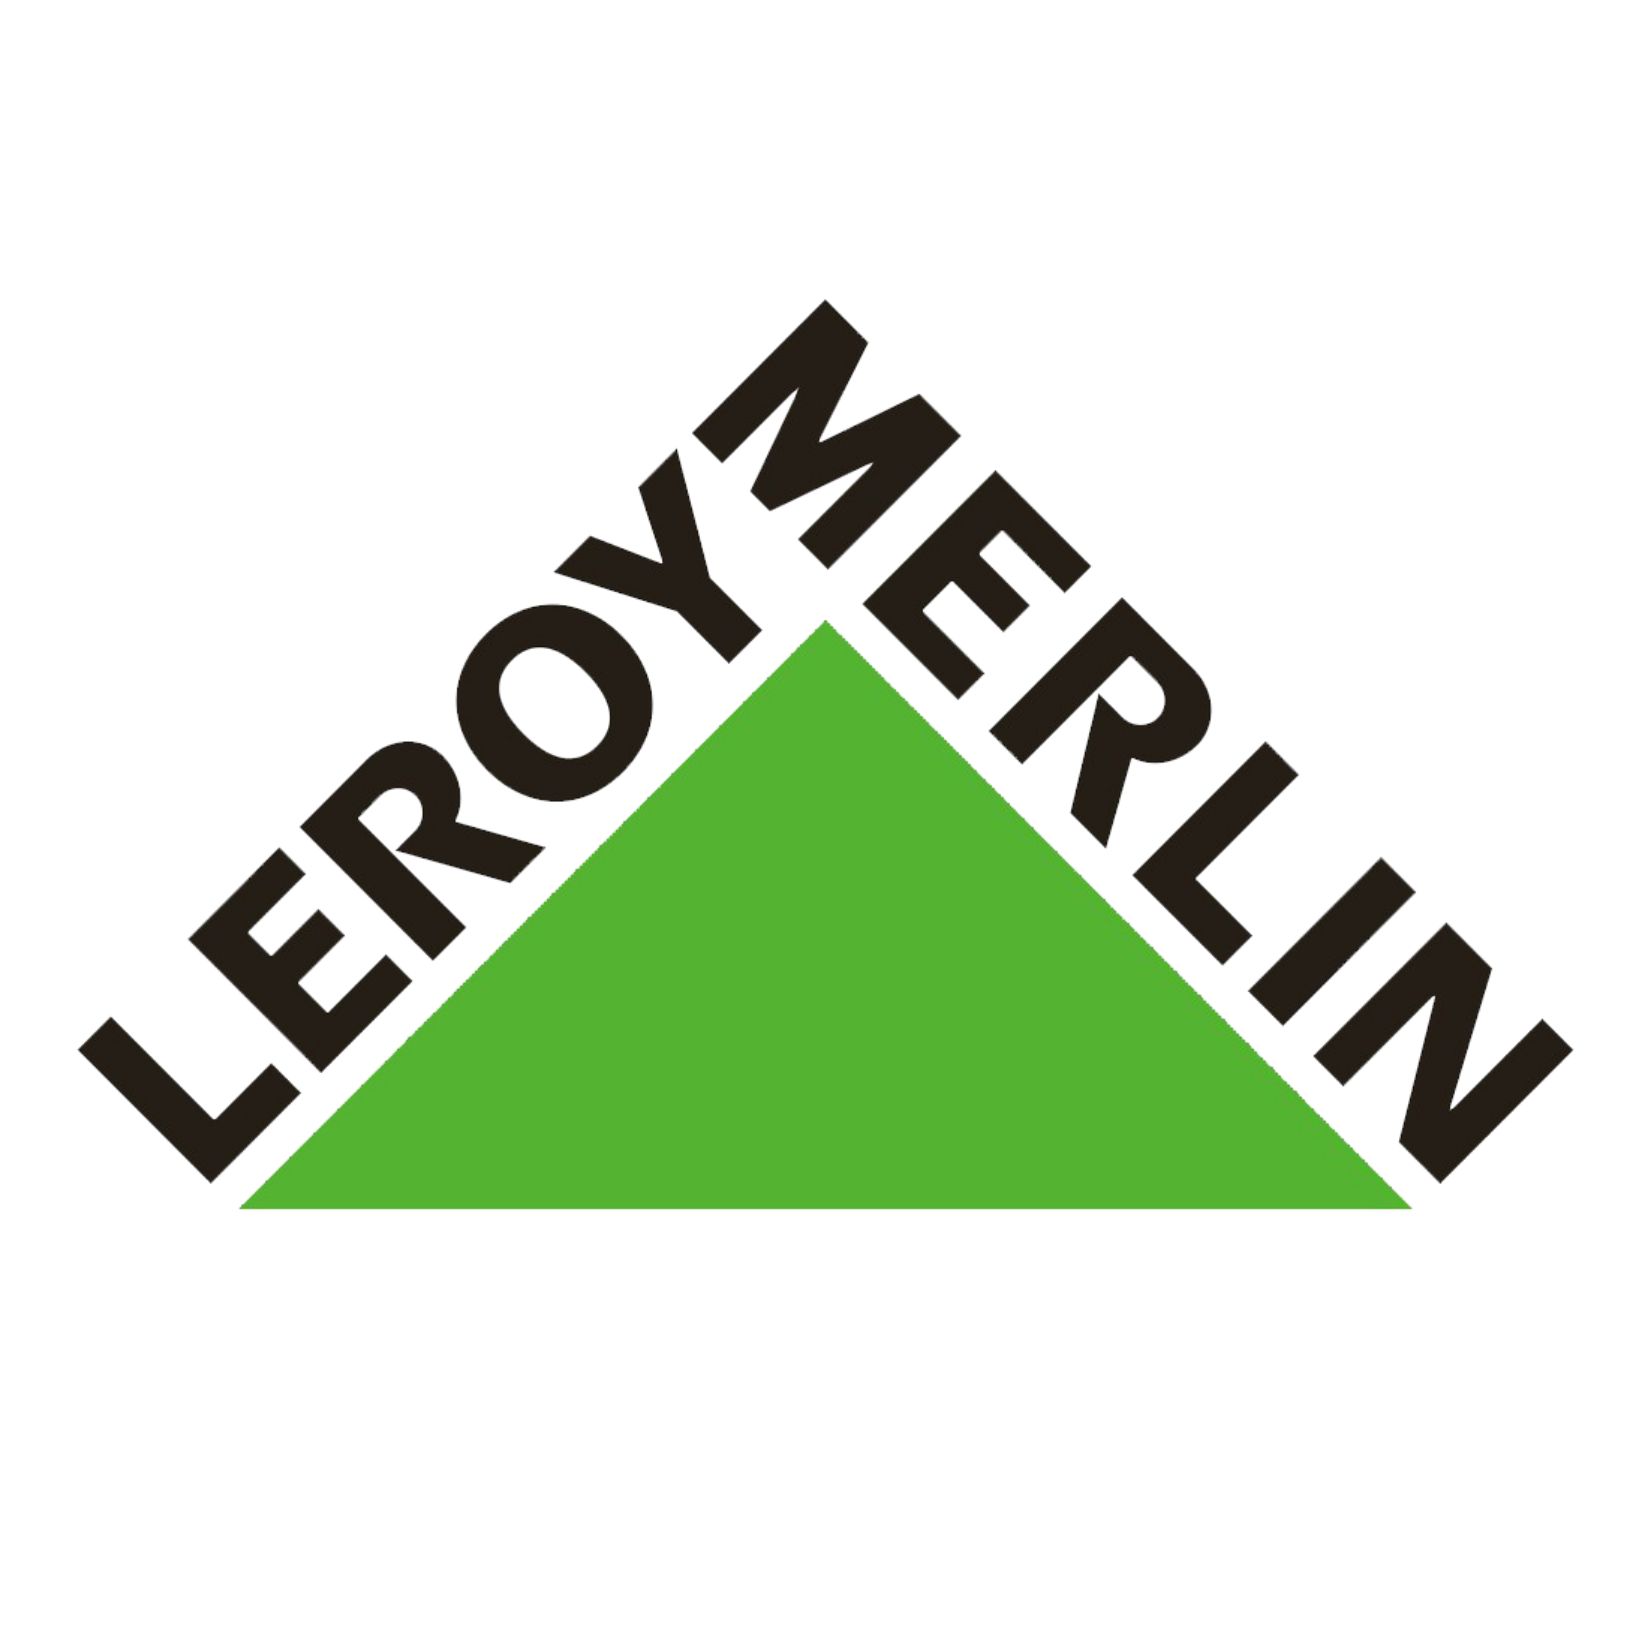 Piscinelle x Leroy Merlin : un partenariat de valeurs.